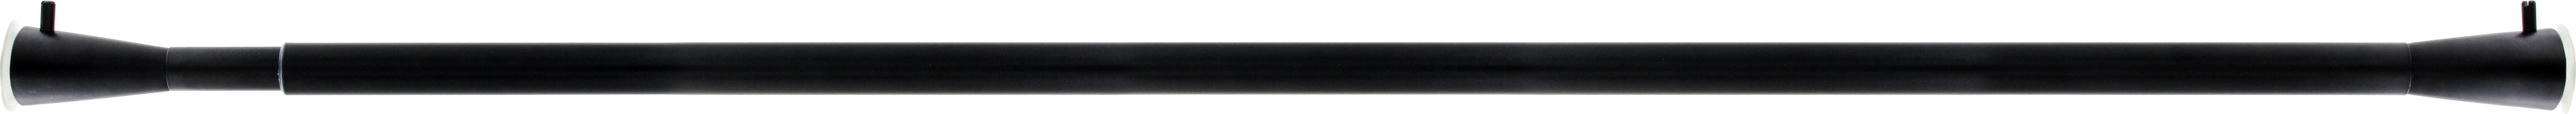 Bastone per tenda a pressione estensibile Ib+ in metallo Ø 20 mm nero opaco Da 143 a 250 cm - 3